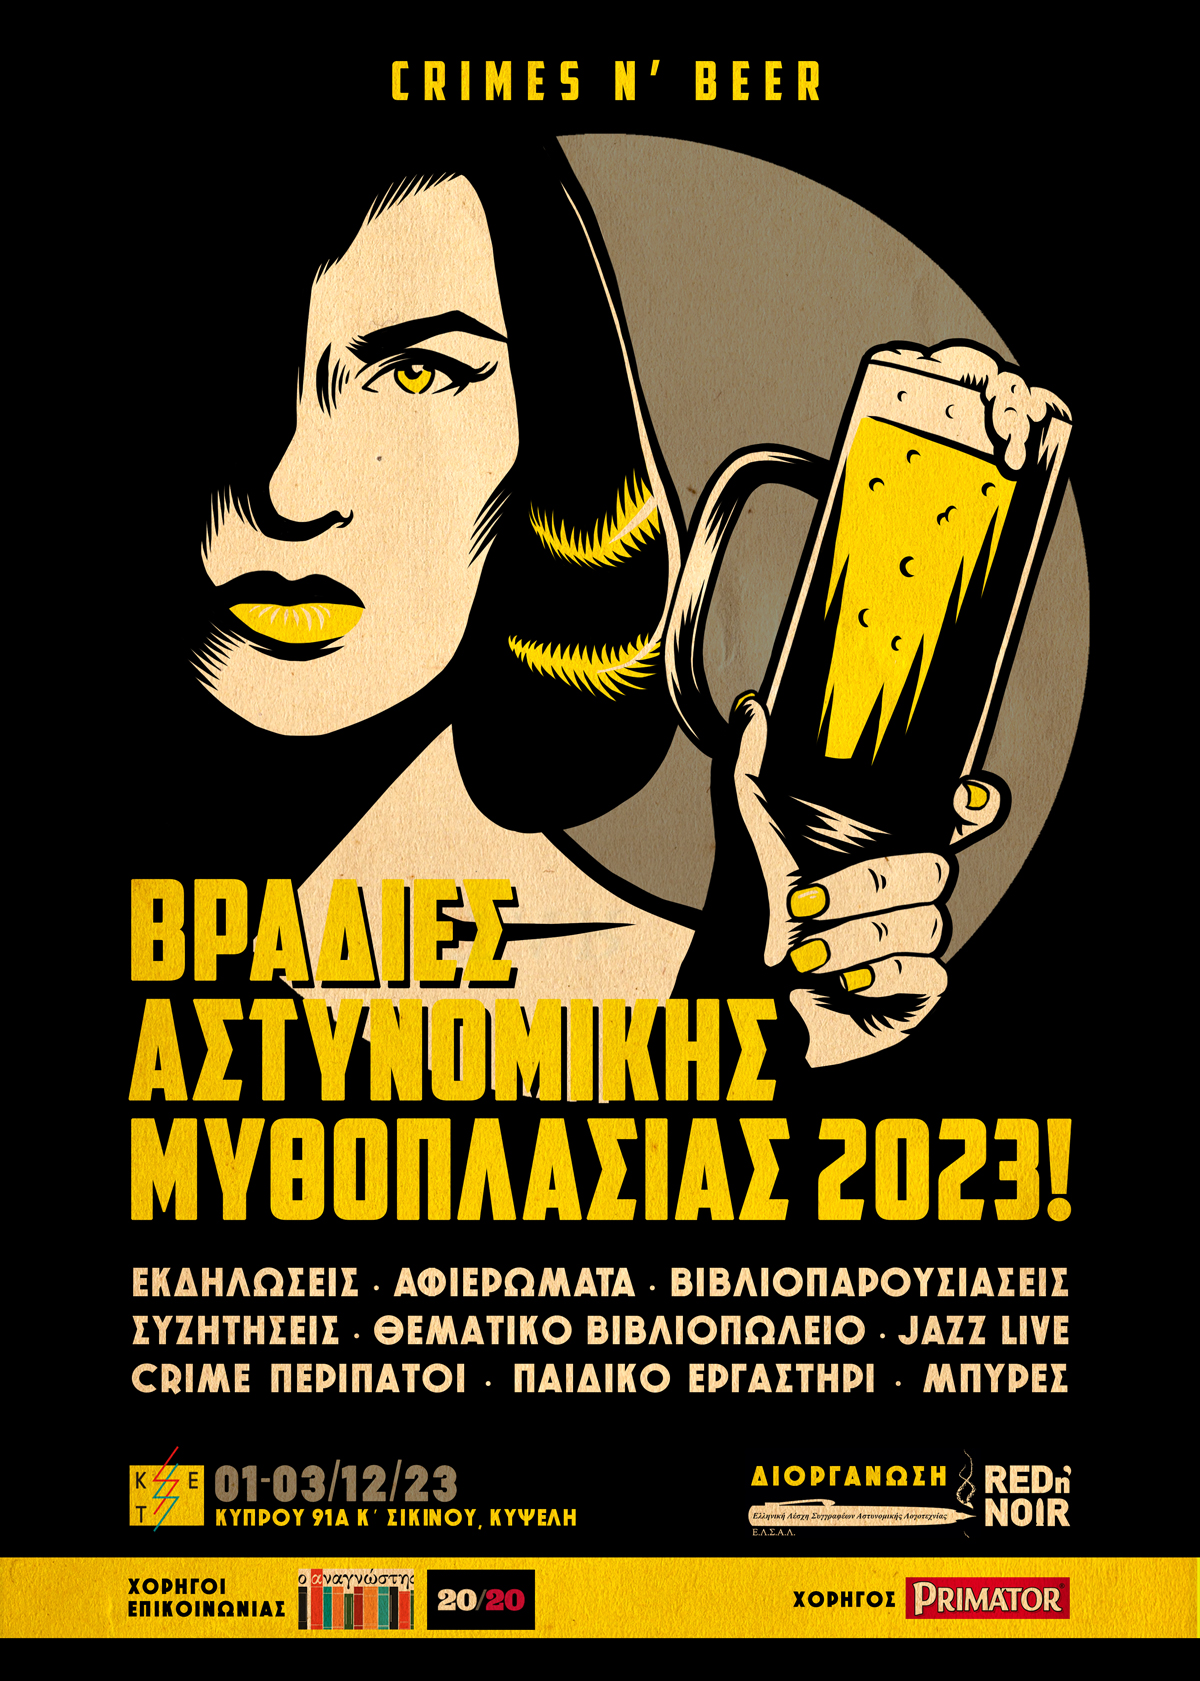 Βραδιές Αστυνομικής Μυθοπλασίας 2023! (crimes n’ beer)